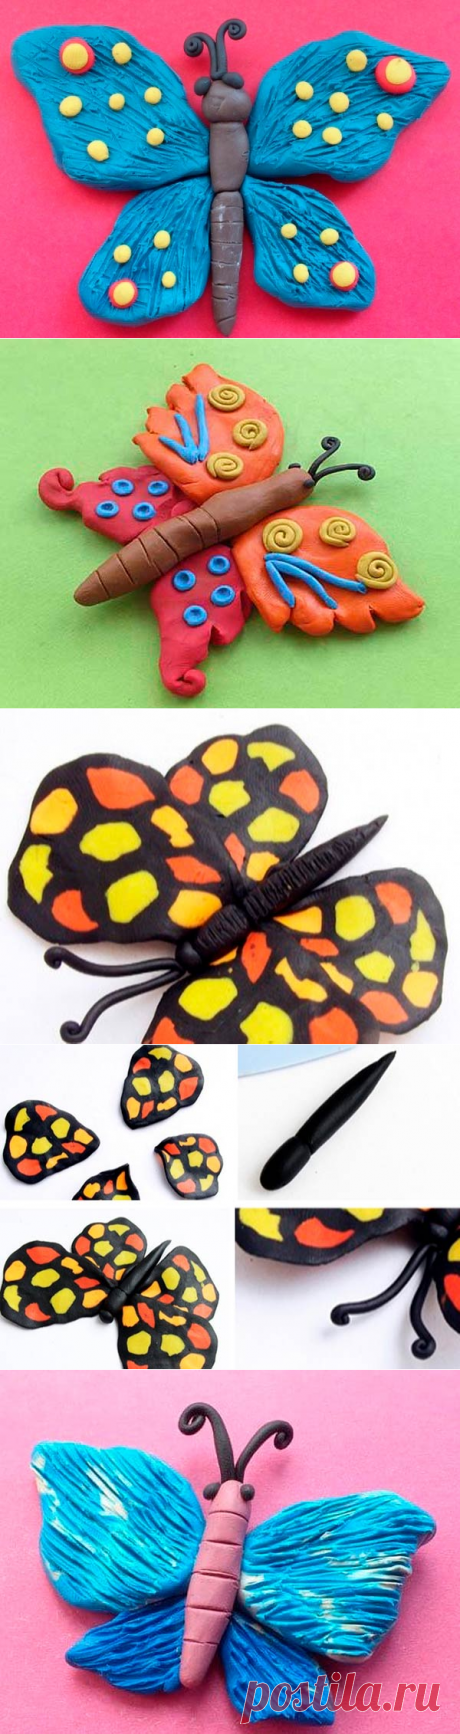 Бабочка из пластилина для детей: как слепить/сделать красивую бабочку из пластилина пошагово с фото, аппликации на бумаге/картоне поэтапная лепка бабочки из легкого и воздушного пластилина - шаблоны, видео